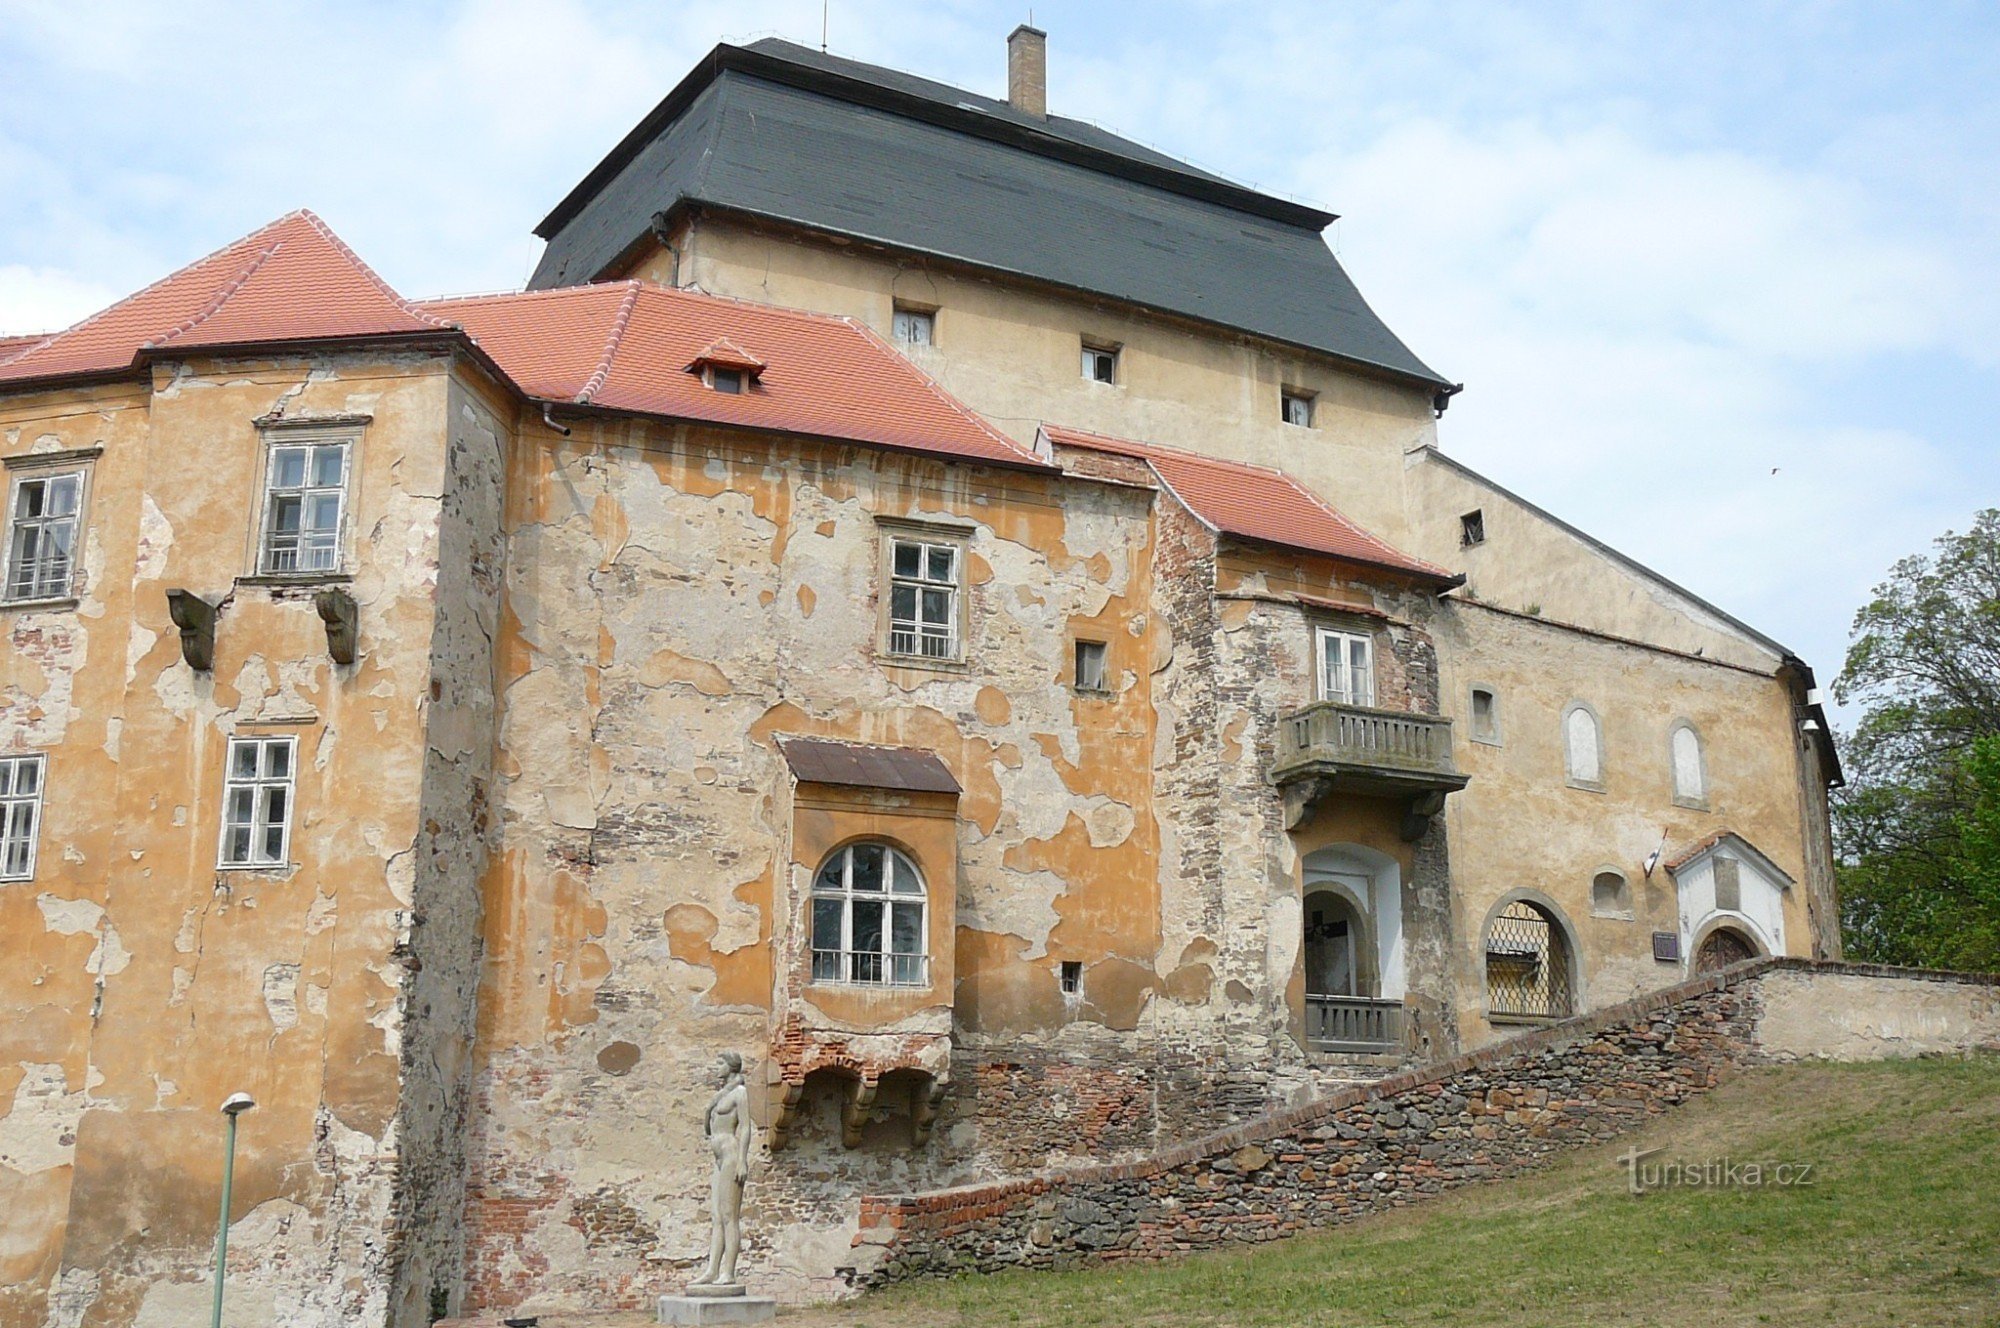 Dvorac Miroslav